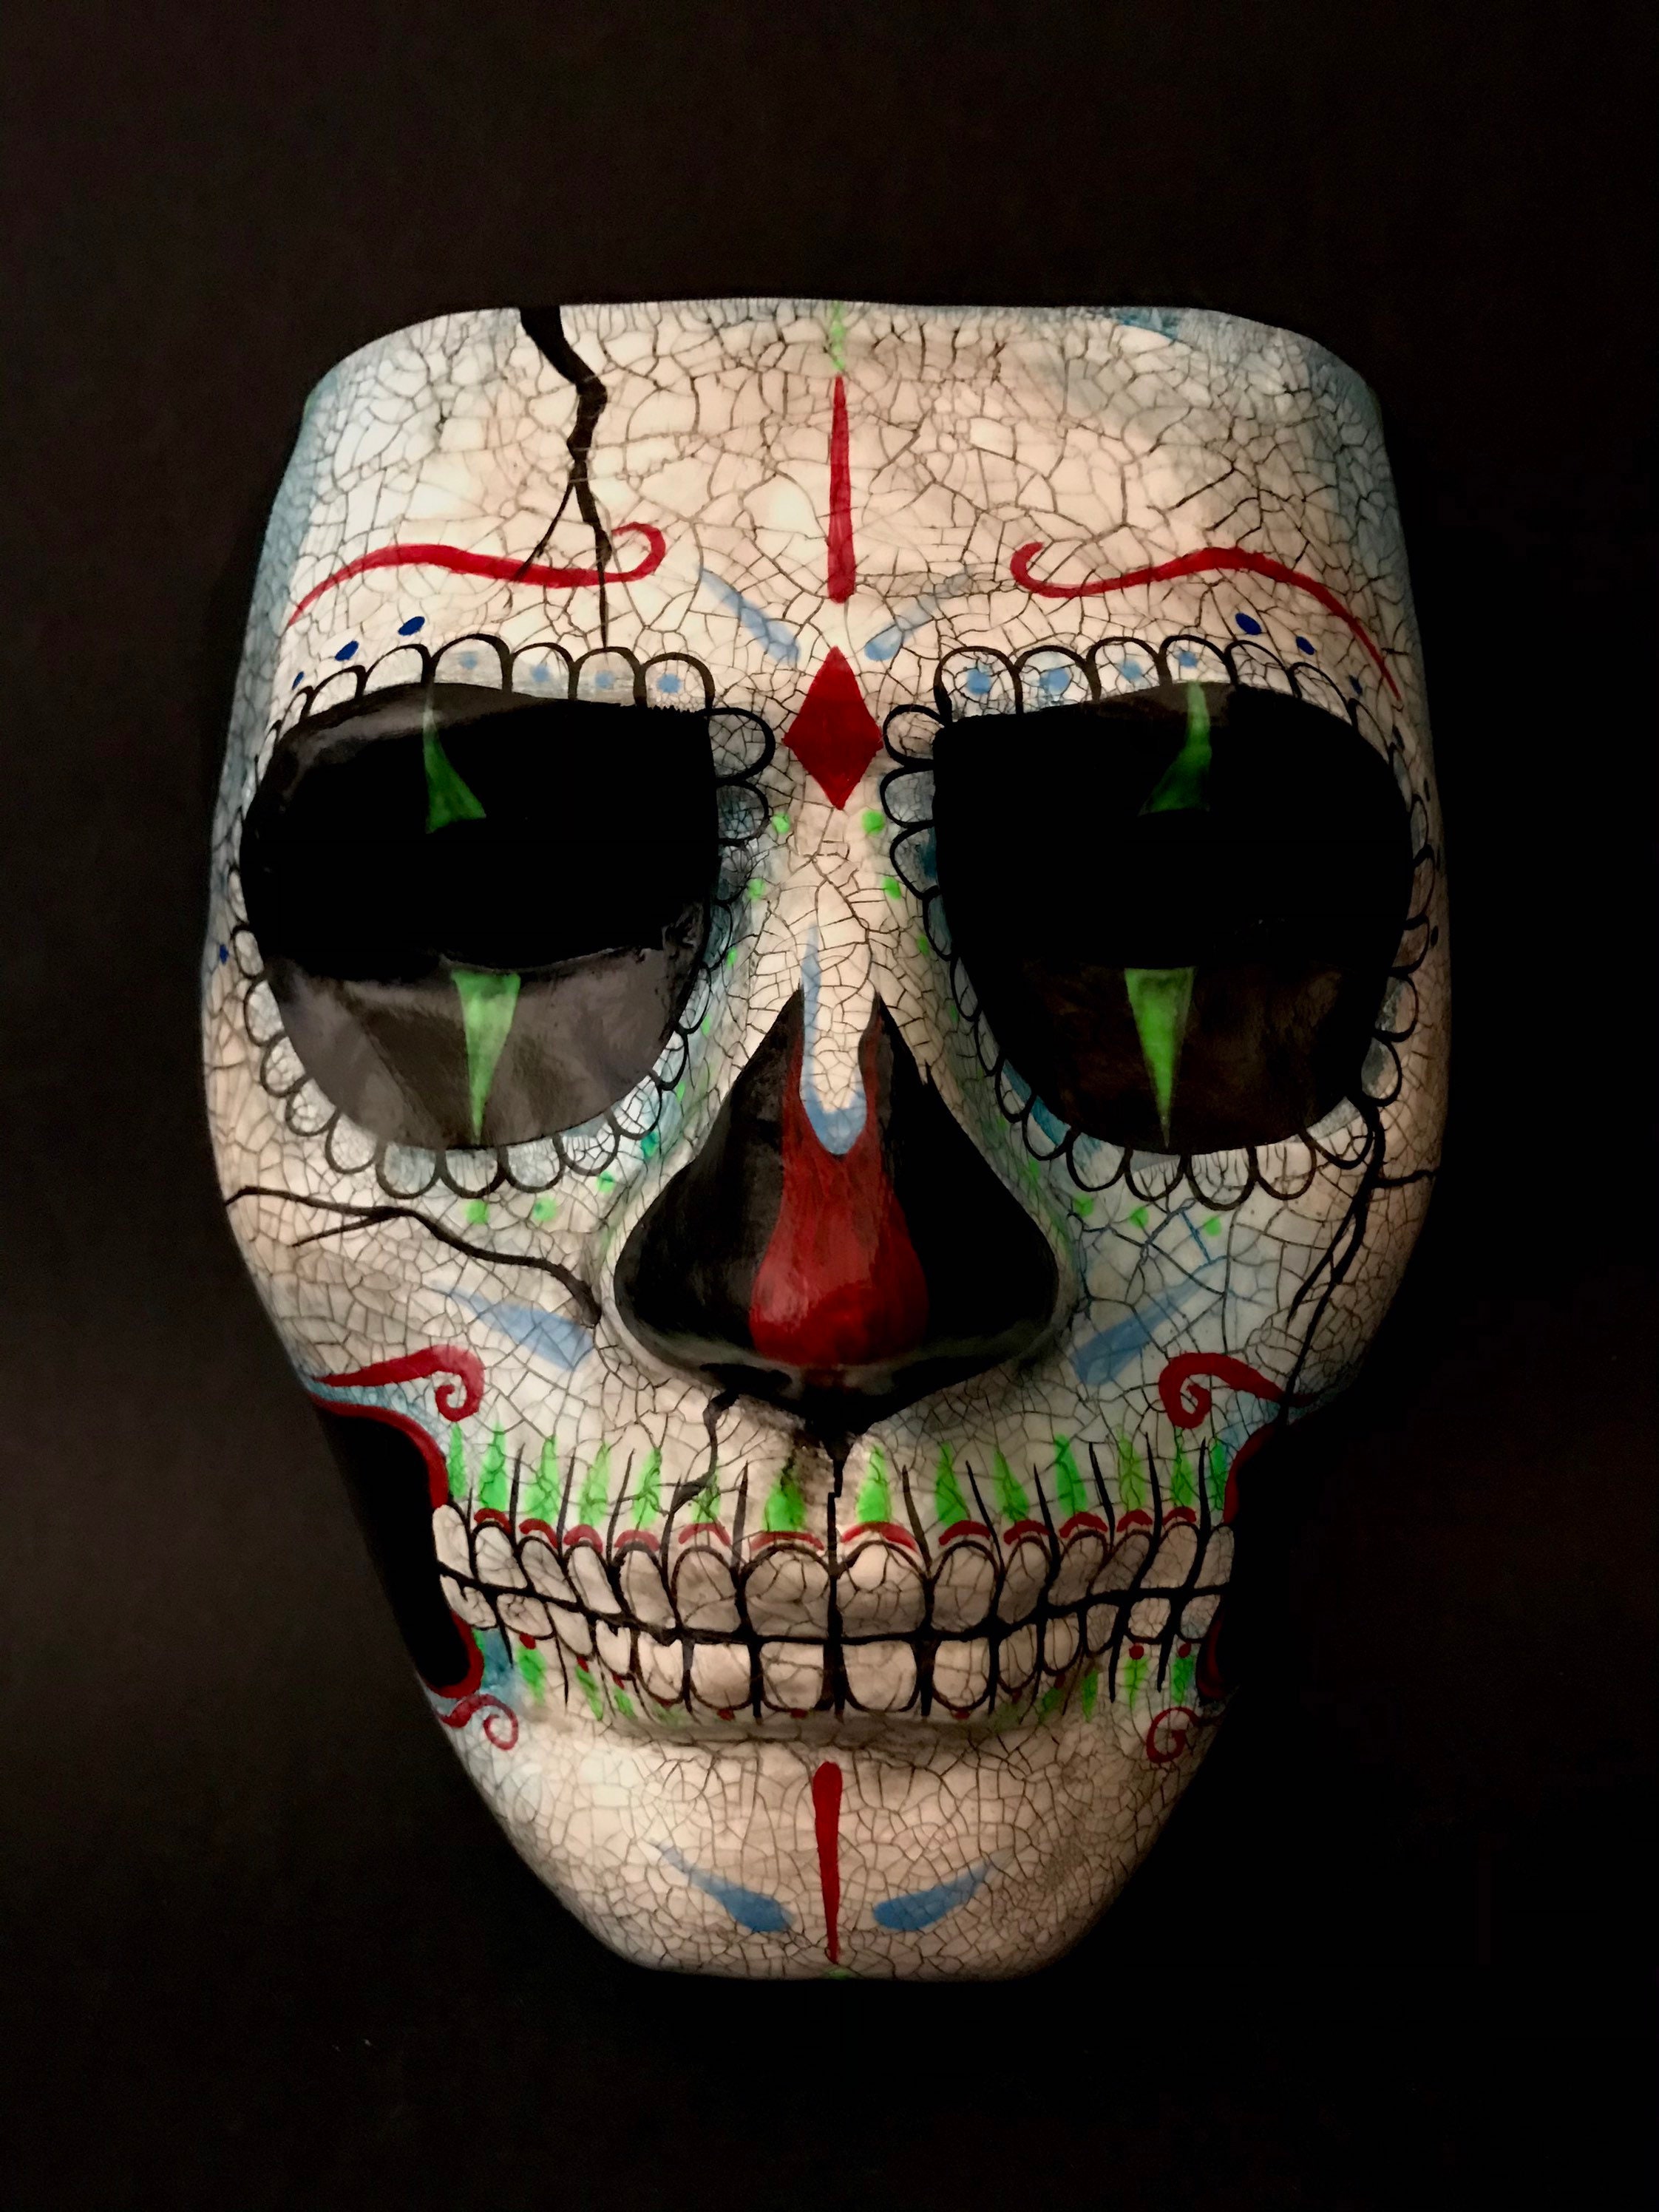 Skull and Bones: Nova data de lançamento muito em breve